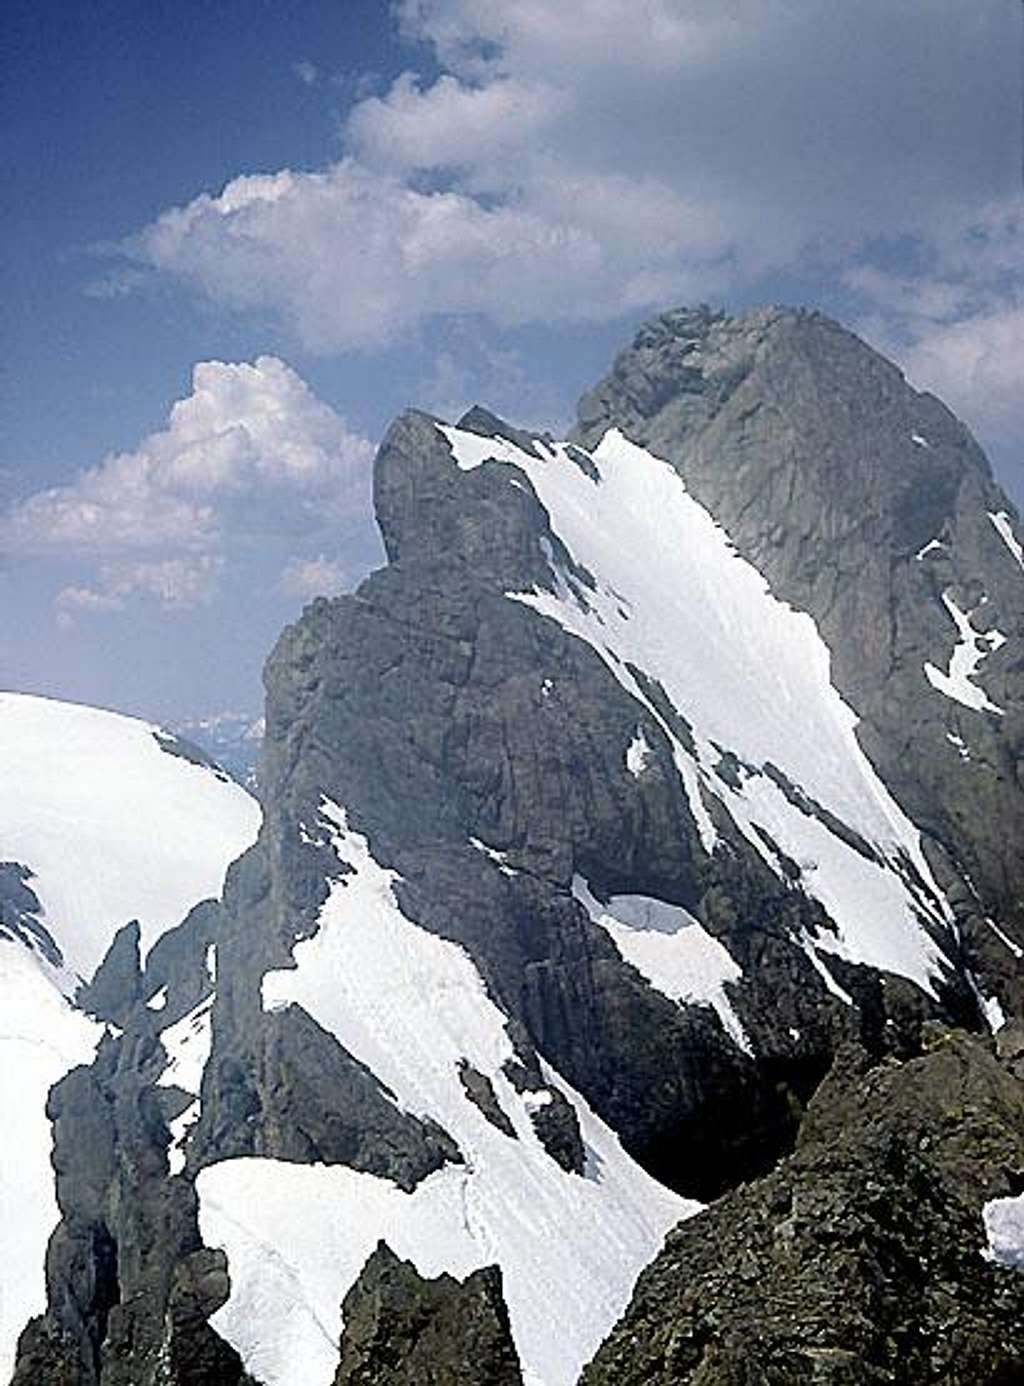 North Ingalls Peak, East Ridge